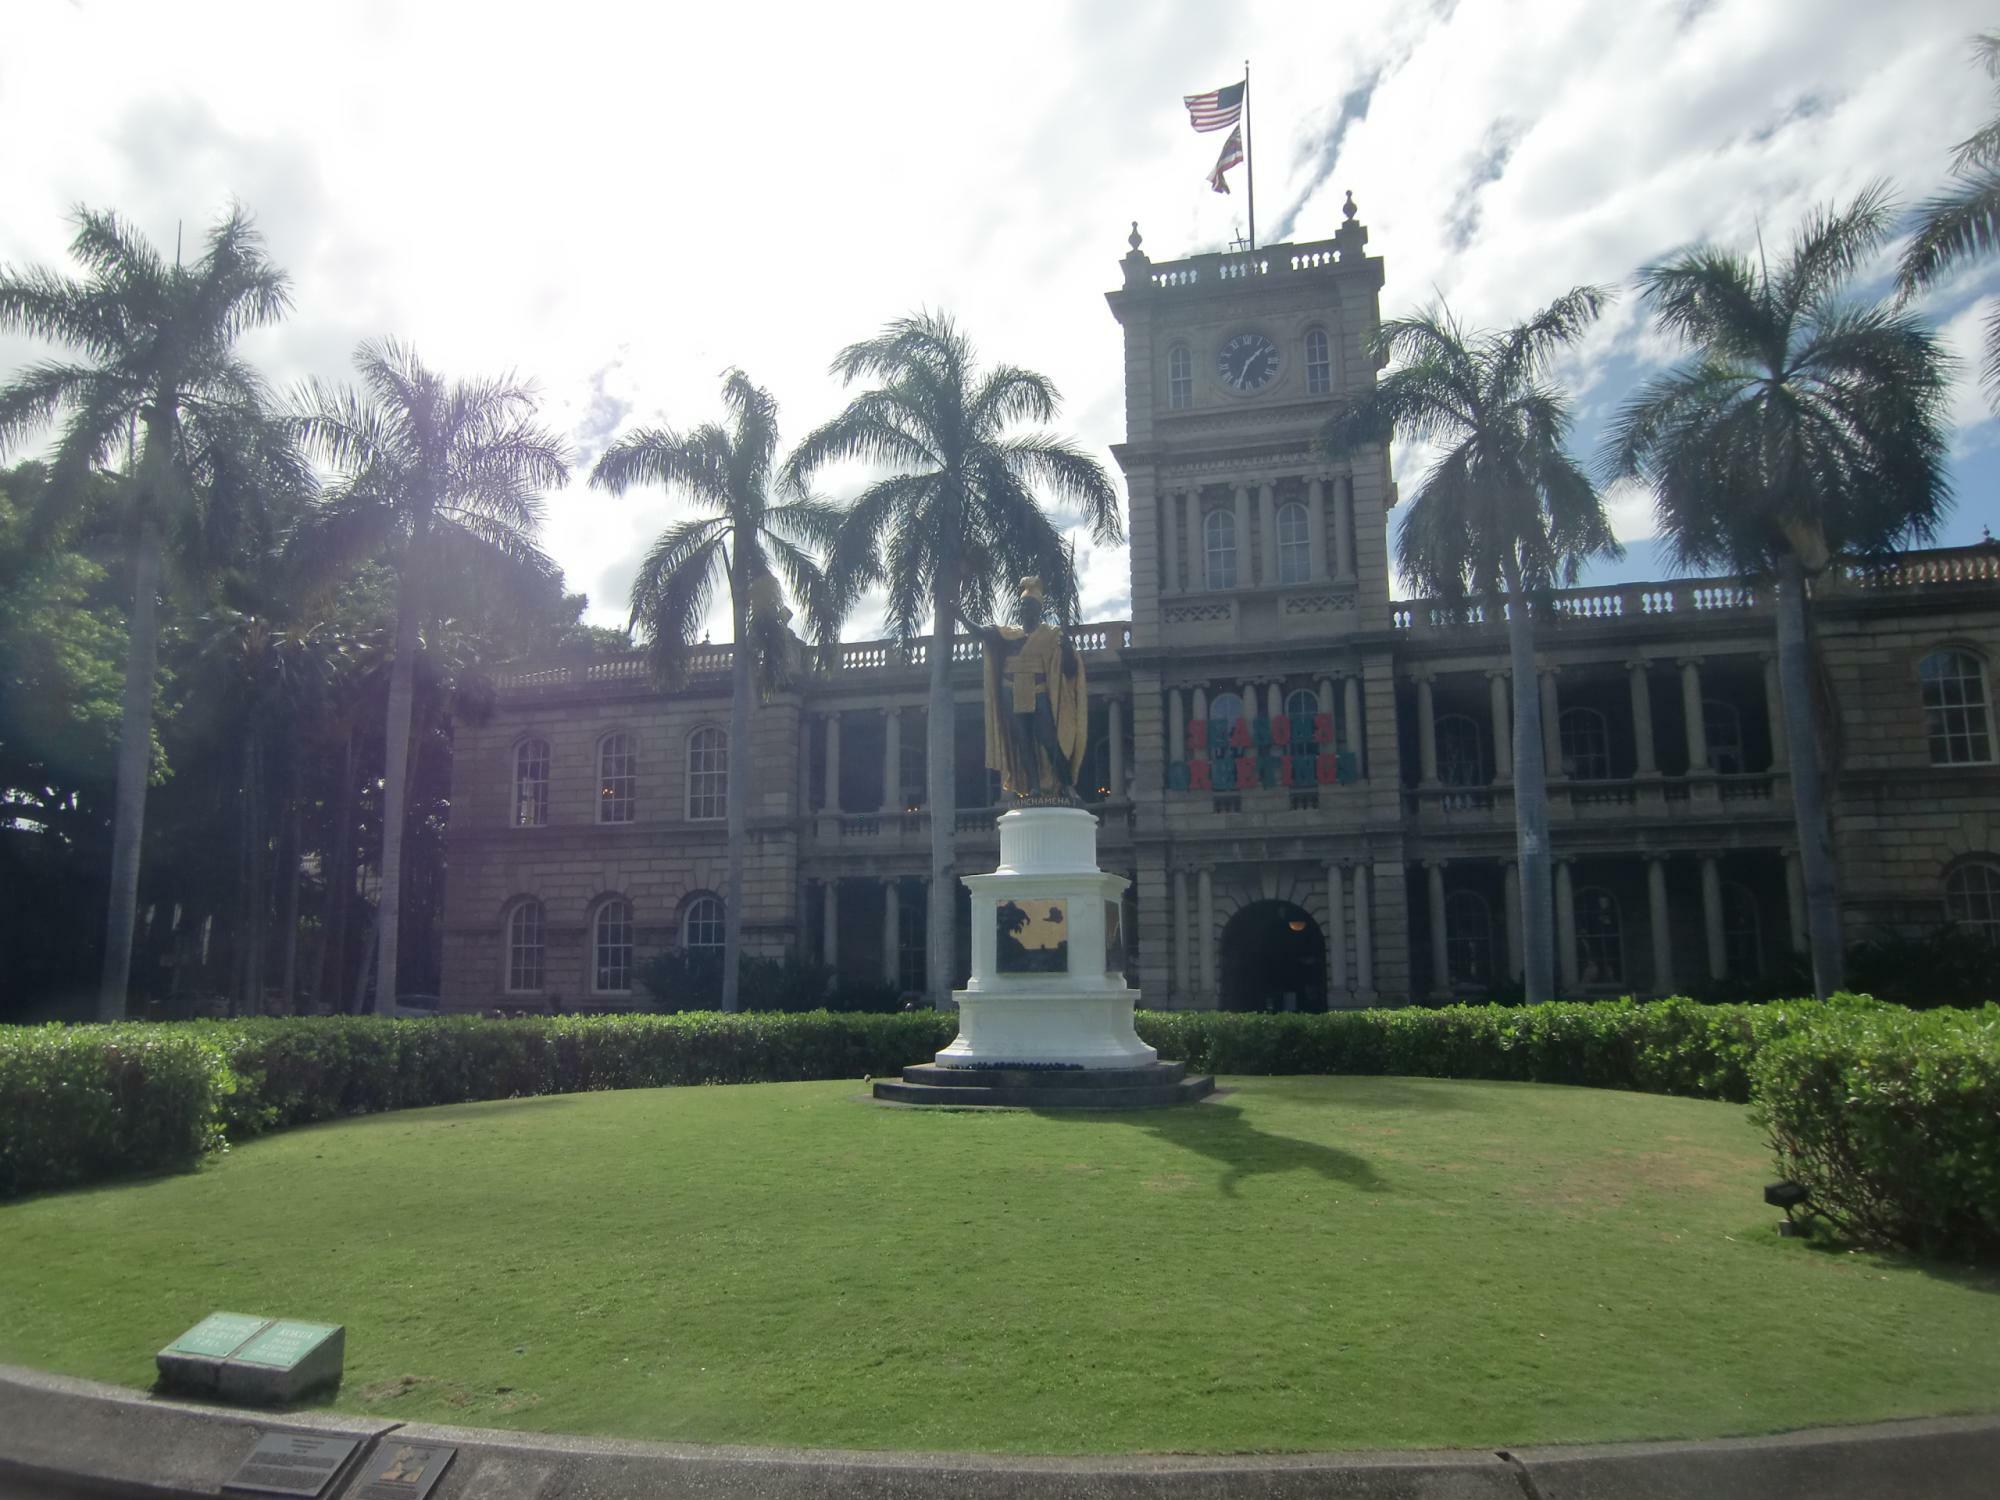 日本の童謡でも有名なカメハメハ大王像（カメハメハ1世）の立つハワイ州最高裁判所（ Hawaii State Supreme Court ）。イオラニ宮殿と並び、ダウンタウンエリアで有名な観光スポット。